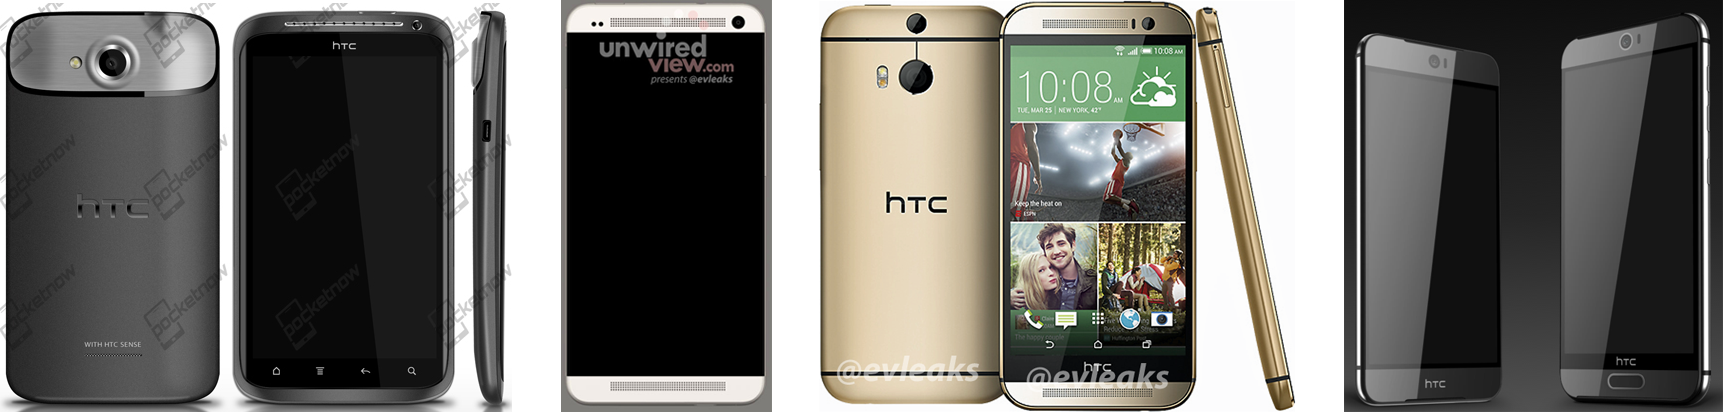 หลุดภาพ Render ของ HTC One M9 และ M9 Plus ดีไซน์ใหม่ กล้องหน้าขนาดใหญ่ และระบบสแกนลายนิ้วมือ